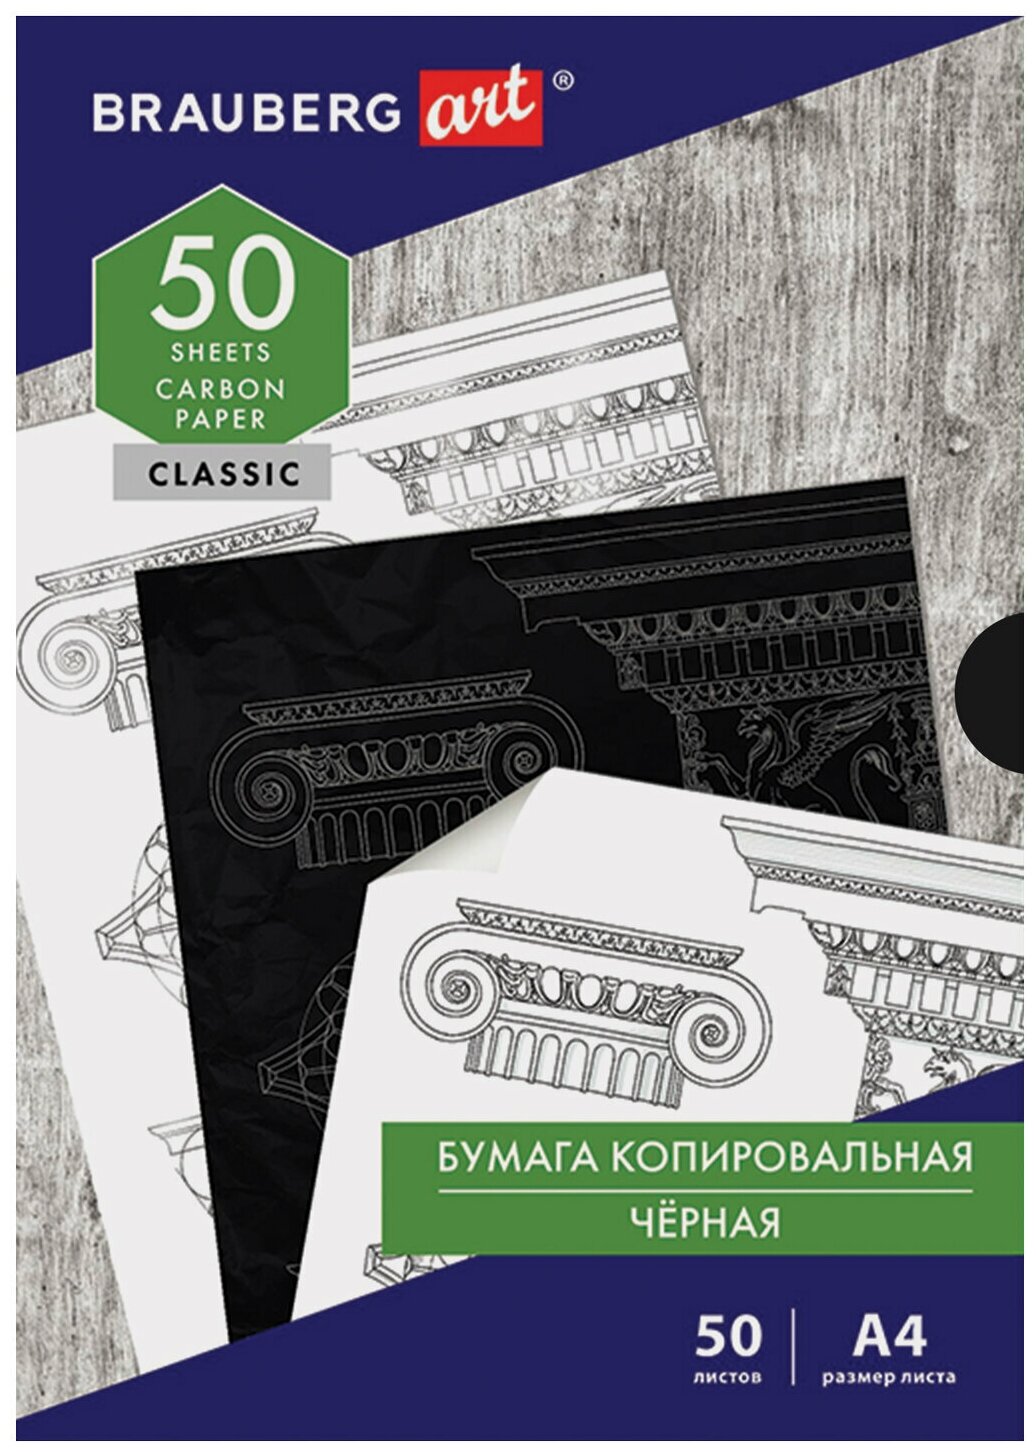 Бумага копировальная (копирка) черная А4, 50 листов, BRAUBERG ART "CLASSIC", 112404 В комплекте: 3шт.